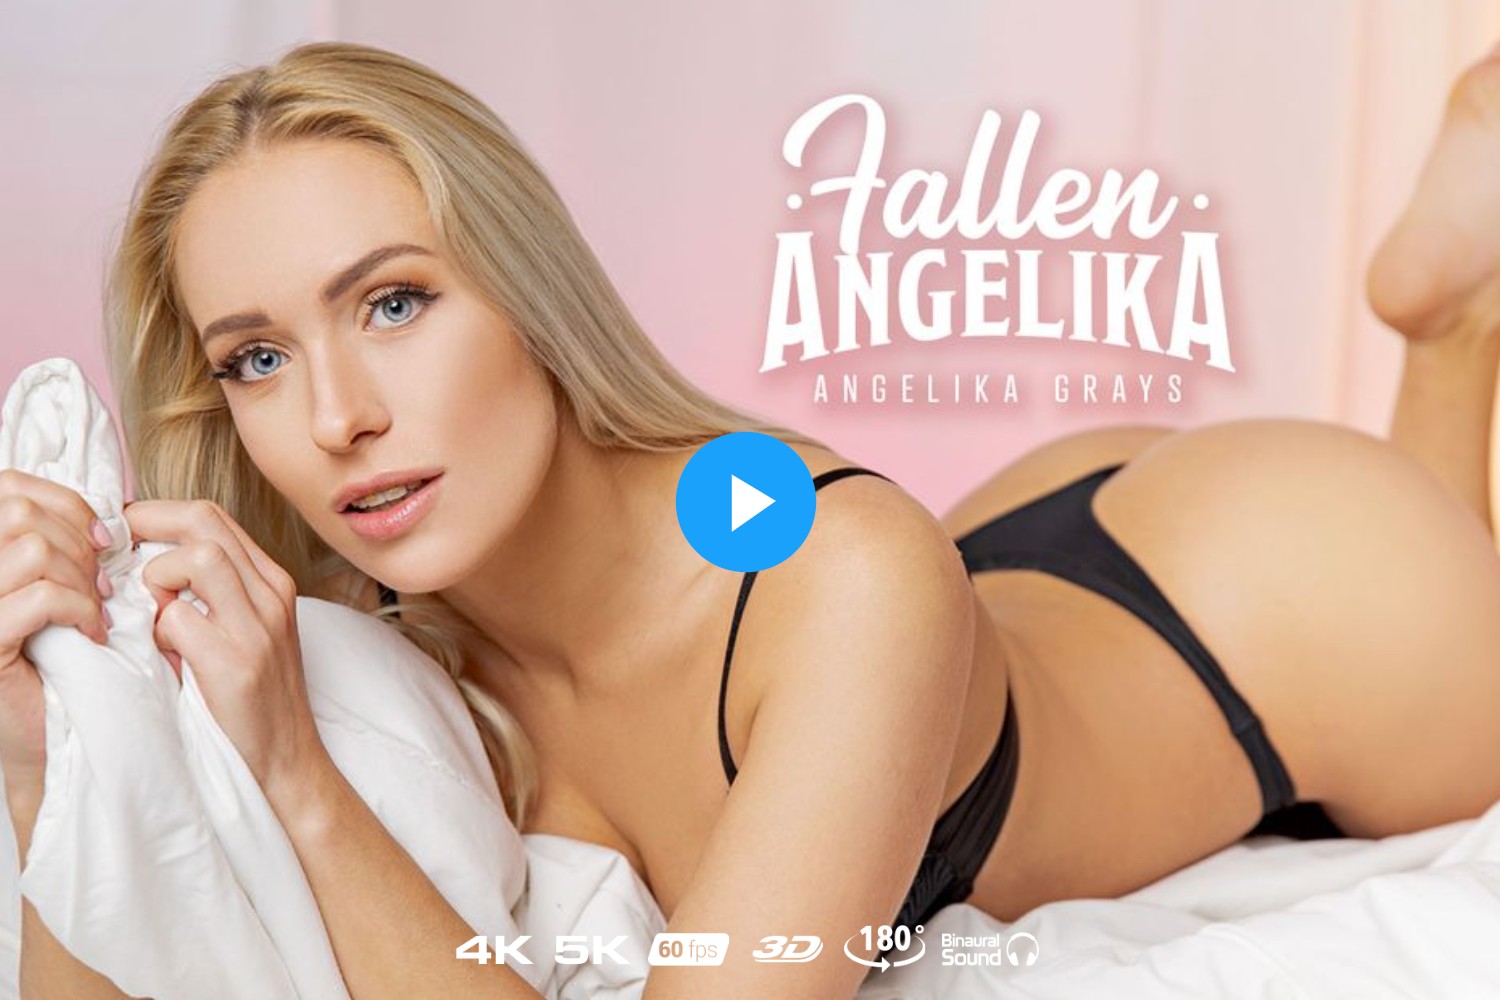 Fallen Angelika - Angelika Grays VR Porn - Angelika Grays Virtual Reality Porn